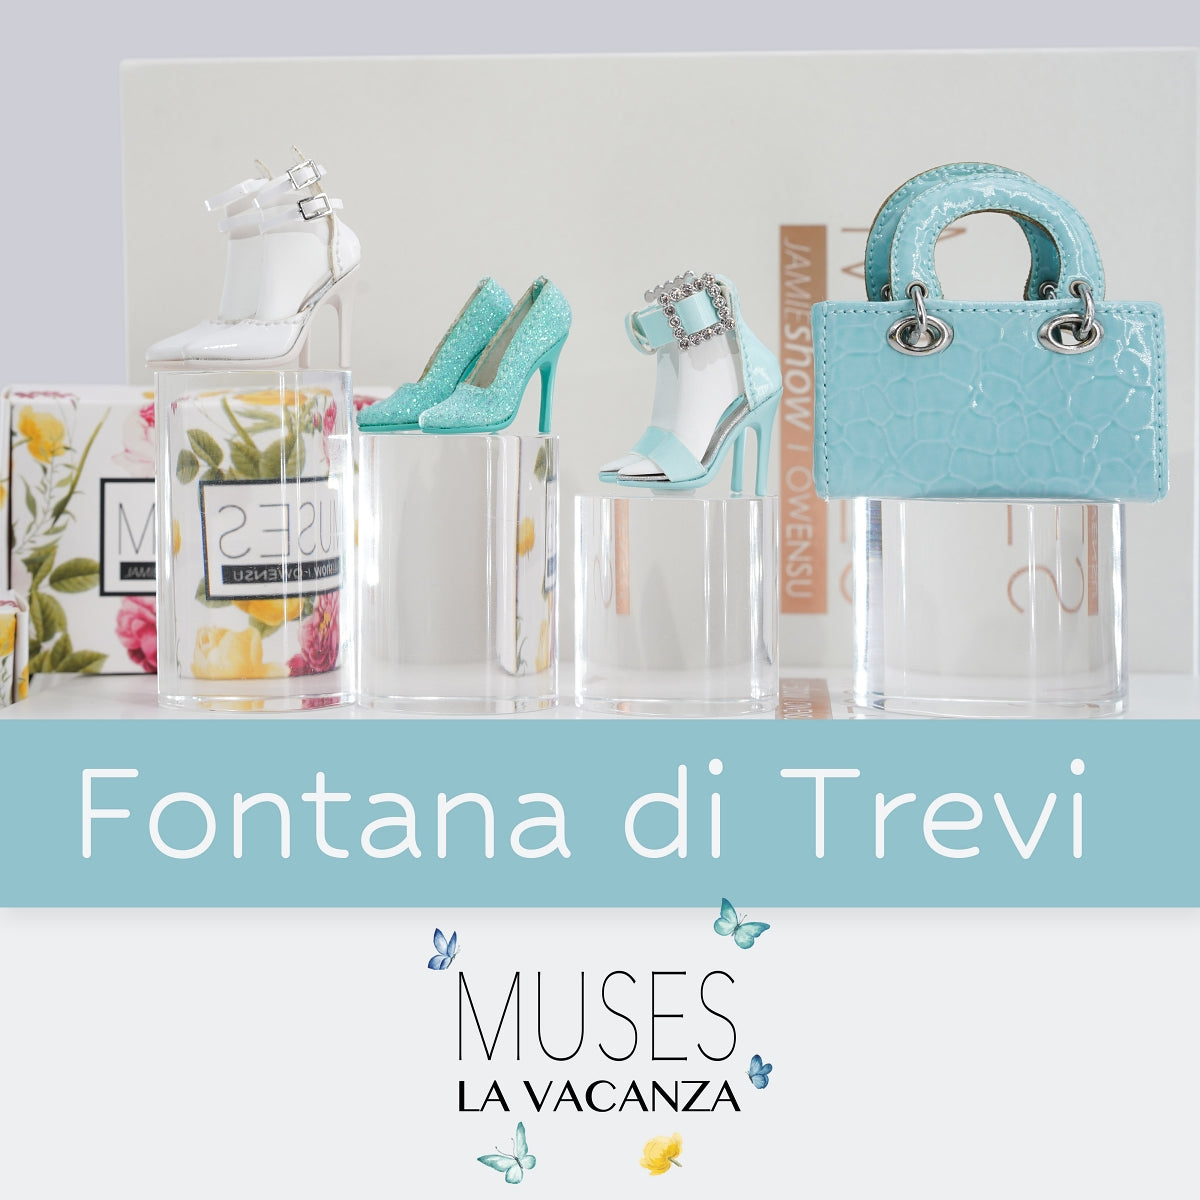 Muses La Vacanza Fontana di Trevi , Acc. Set., Pre-Oder for Winter 2023 Delivery.